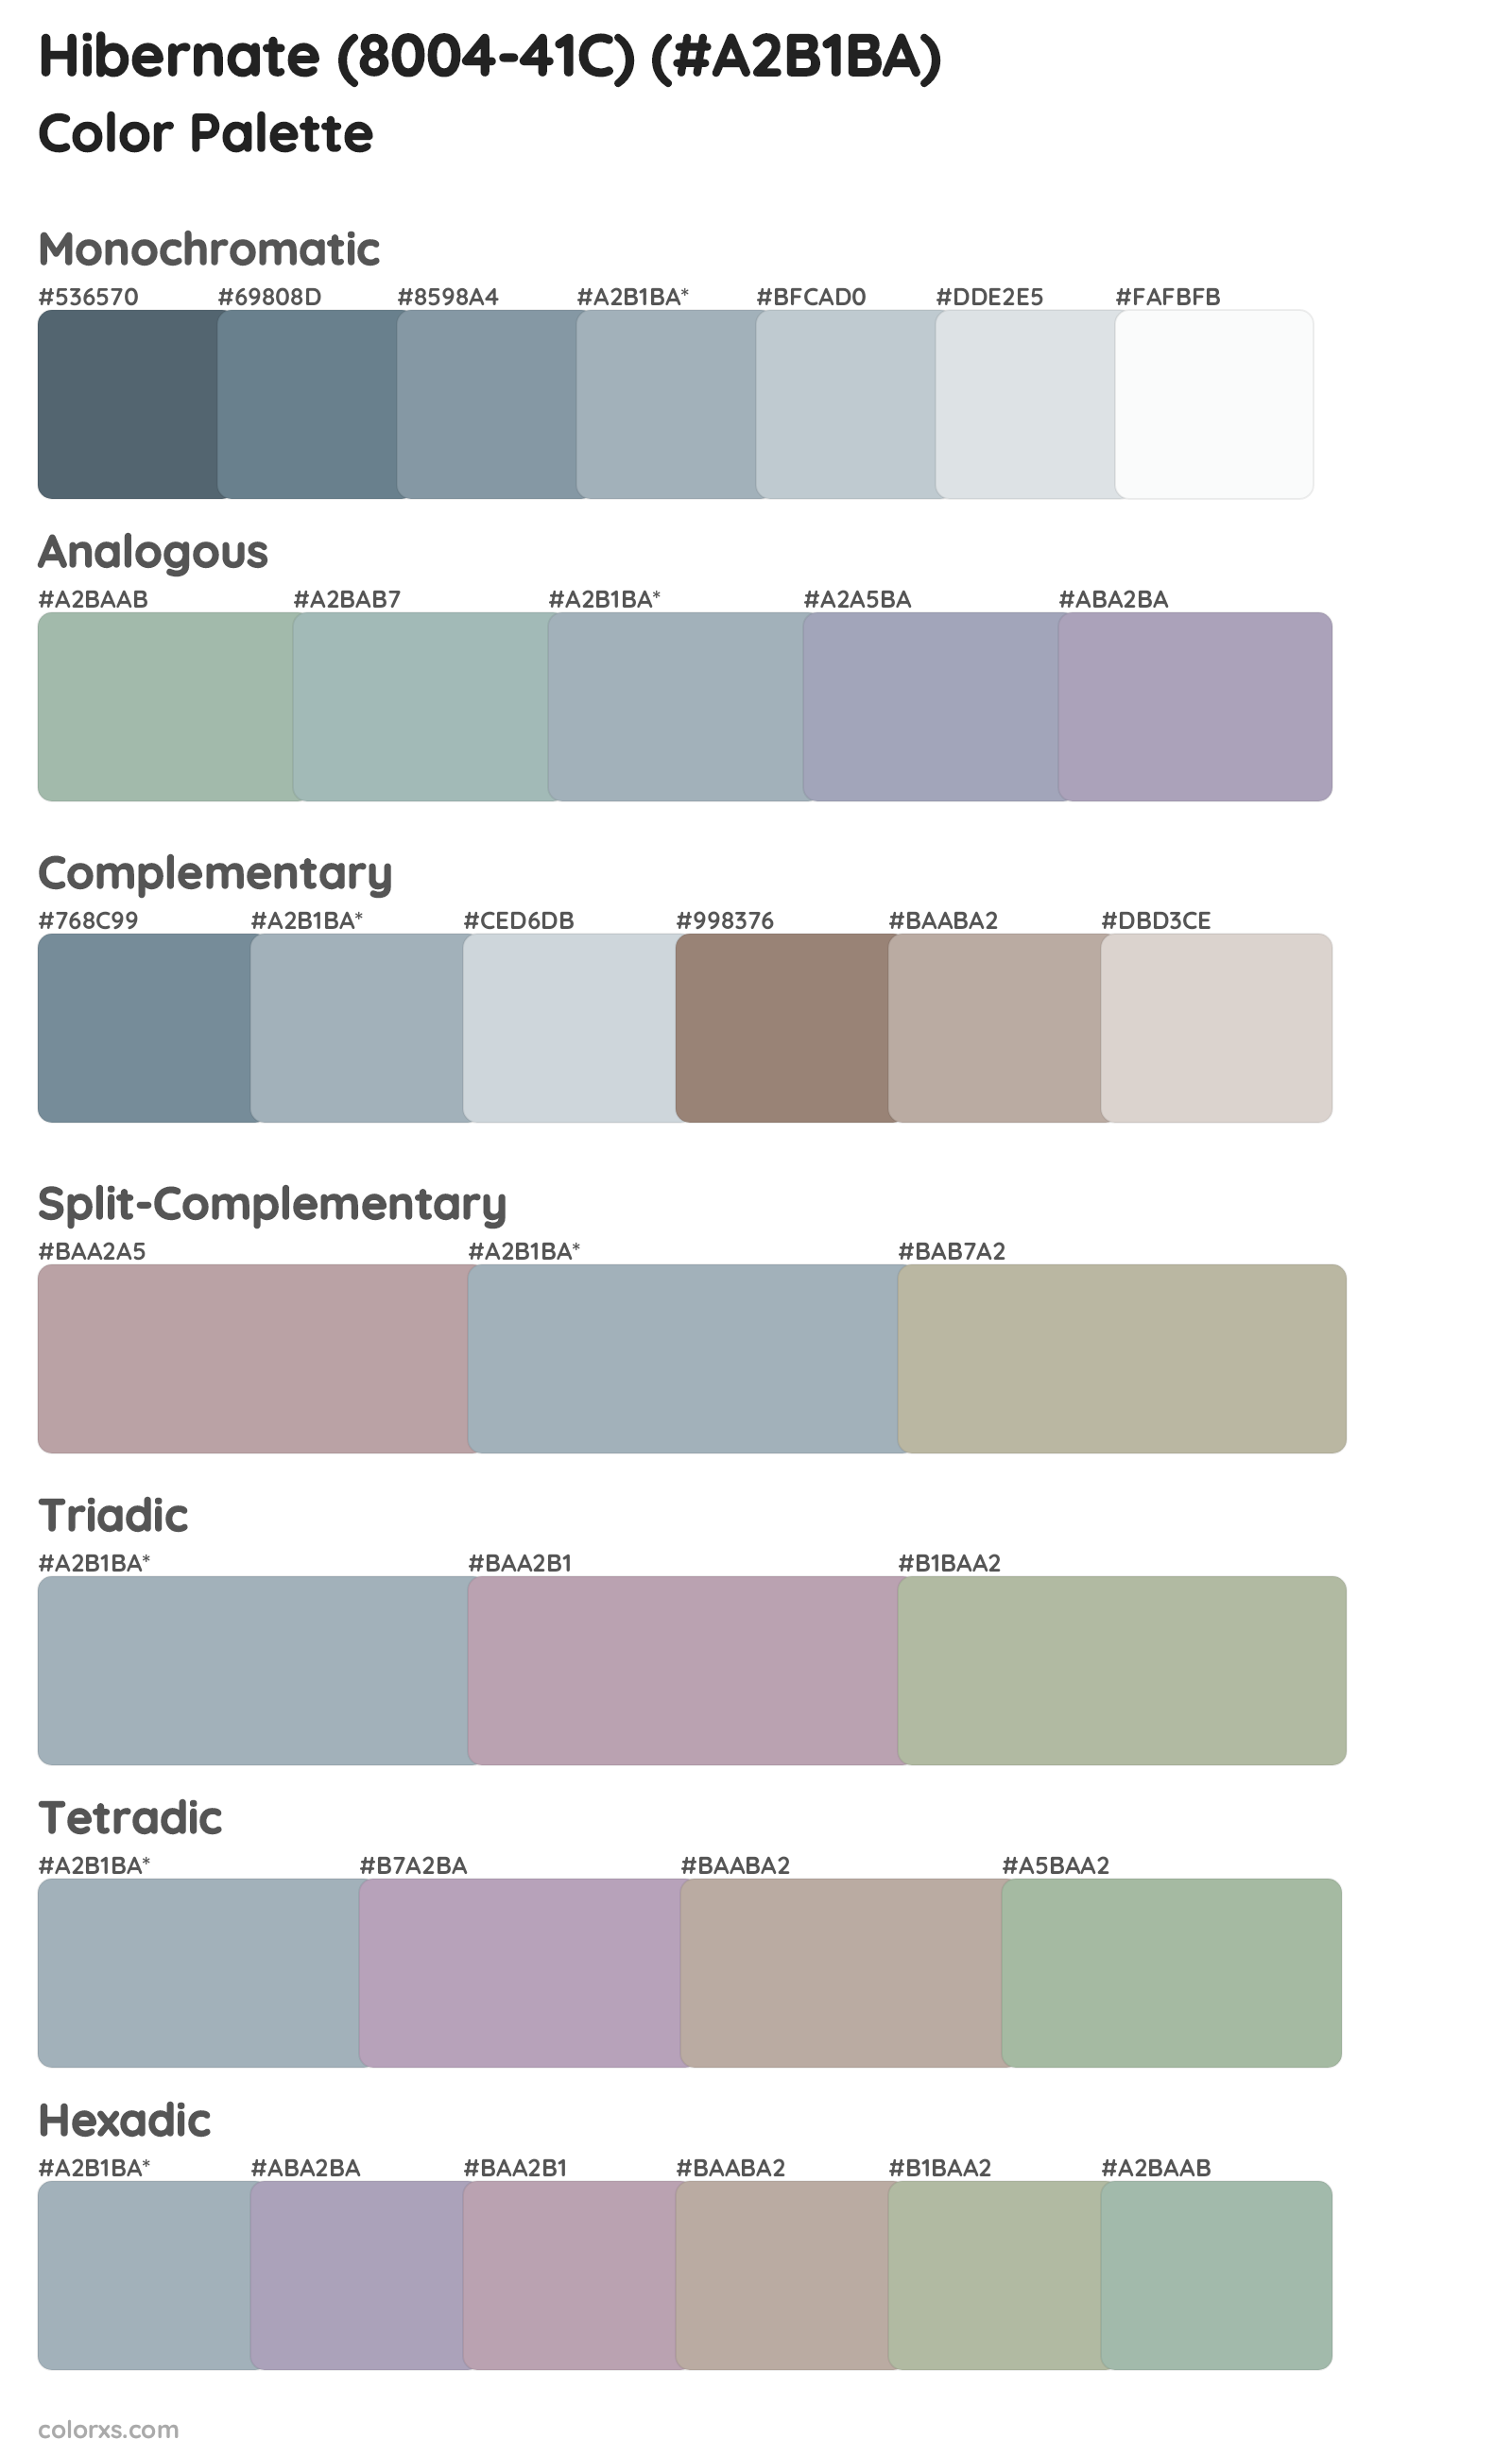 Hibernate (8004-41C) Color Scheme Palettes